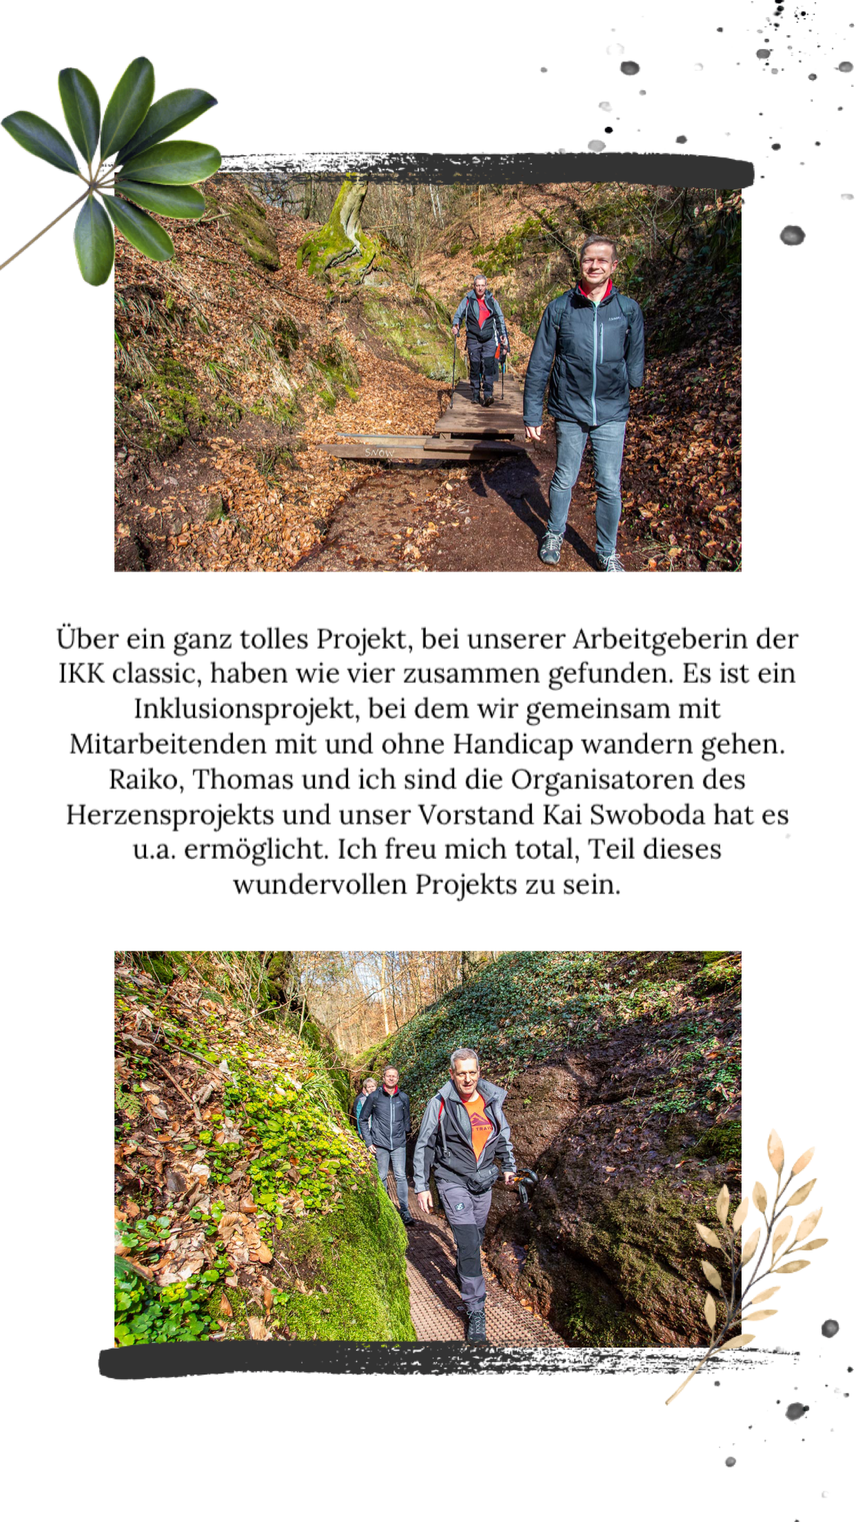 Abwechslungsreiche Wanderung im Mittelgebirge Thüringer Wald - durch die Drachenschlucht, hinauf zur Wartburg und durch die Landgrafenschlucht. Diese Tour muss du unbedingt einmal gemacht haben.